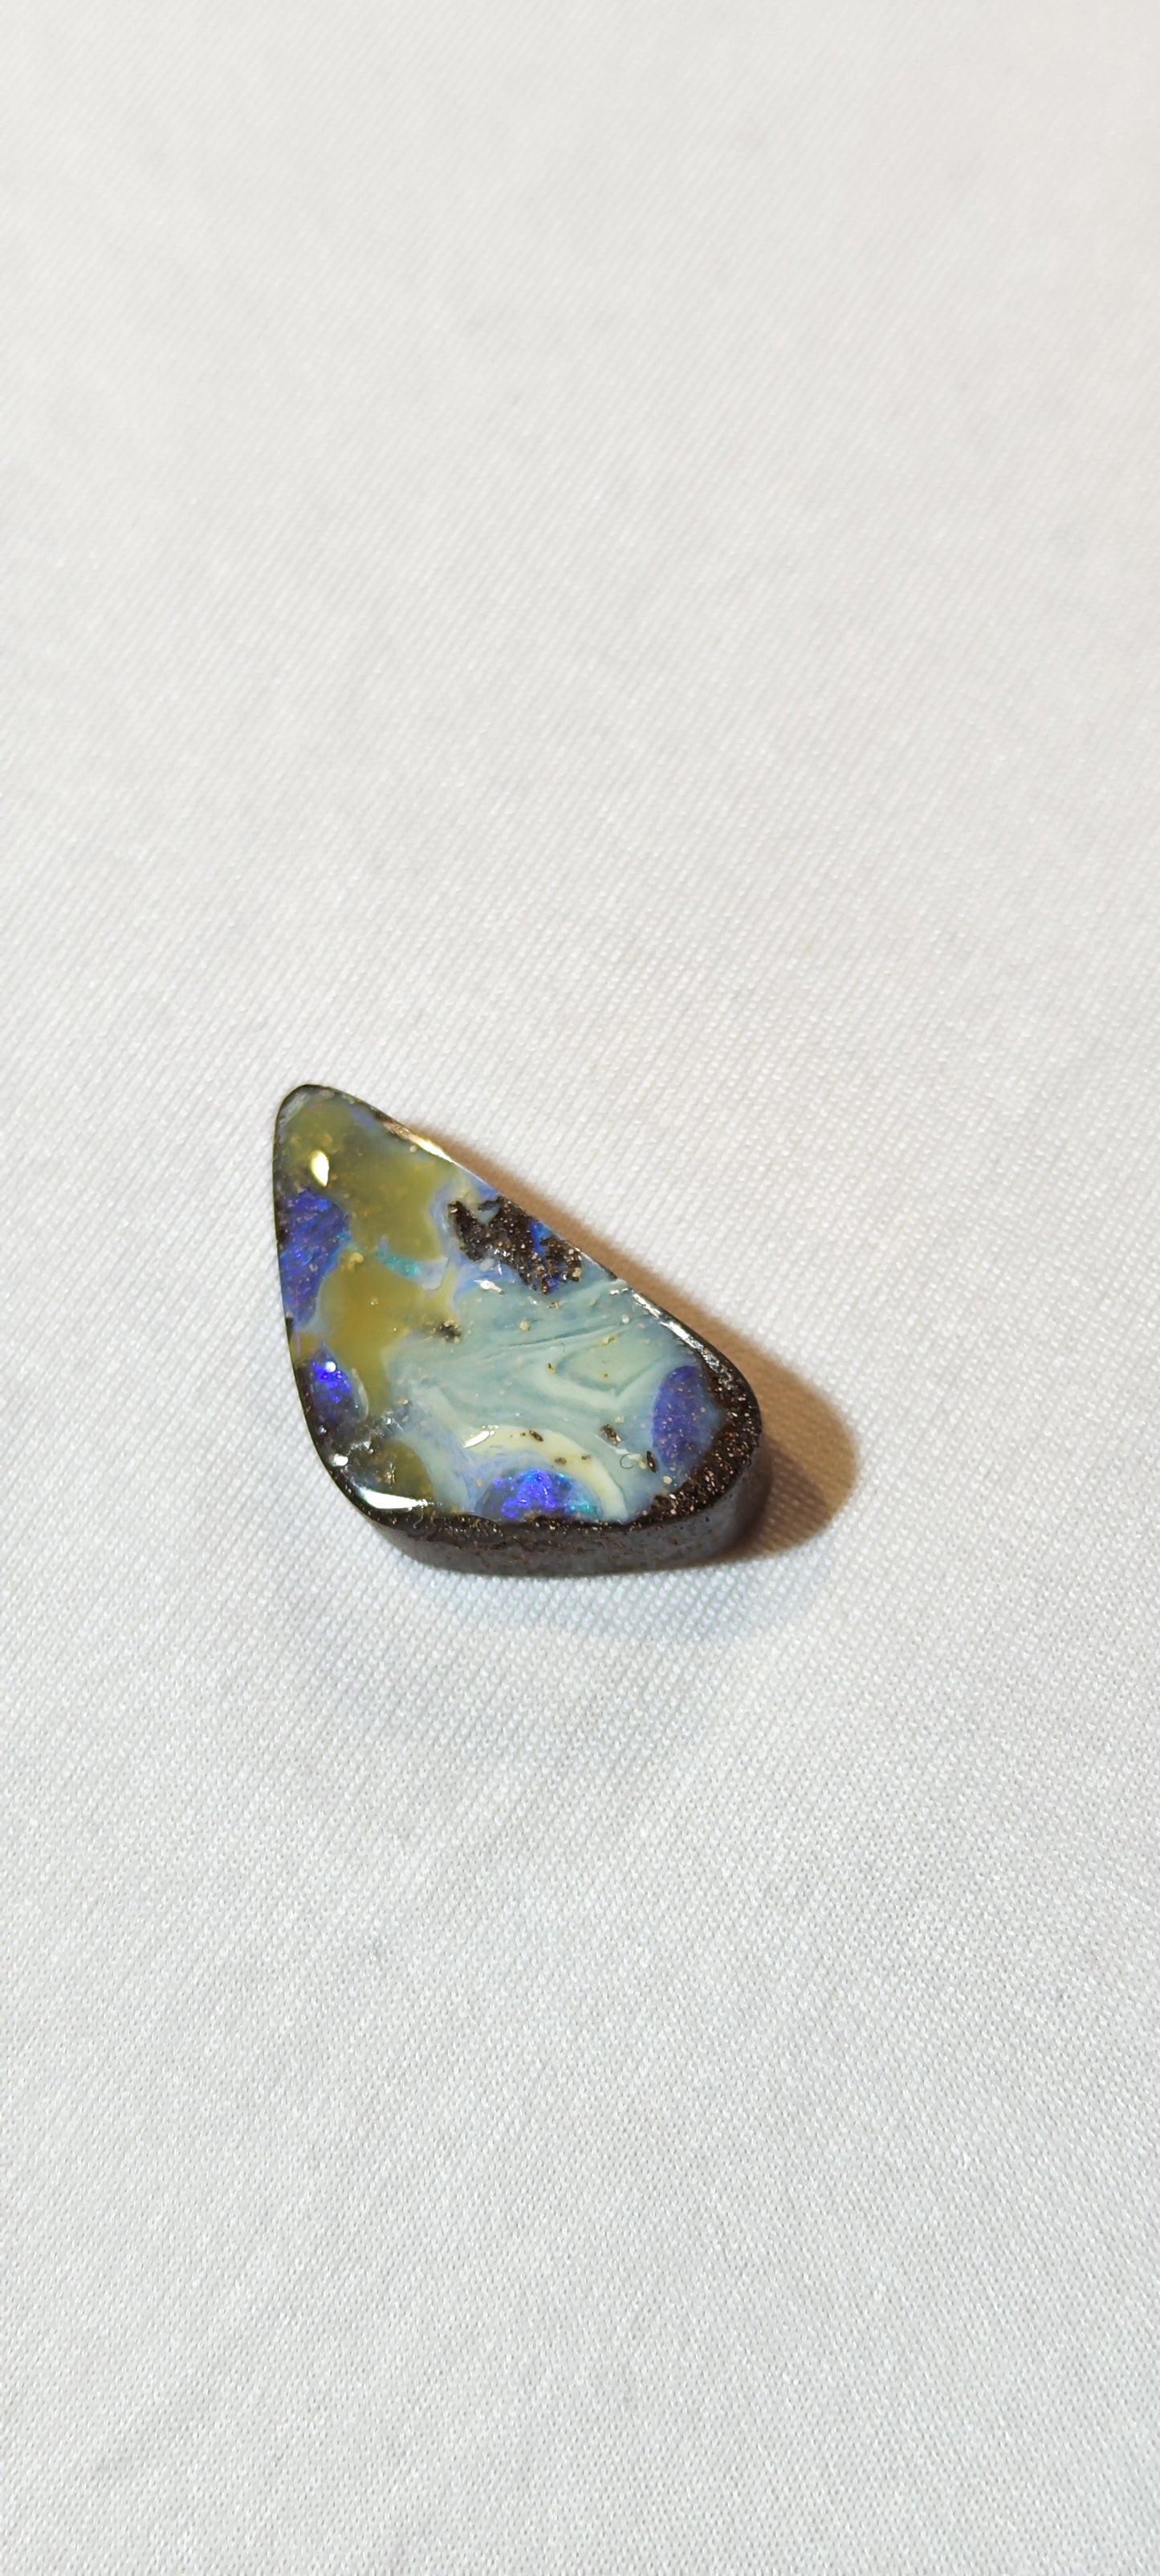 Opale boulder spécimen